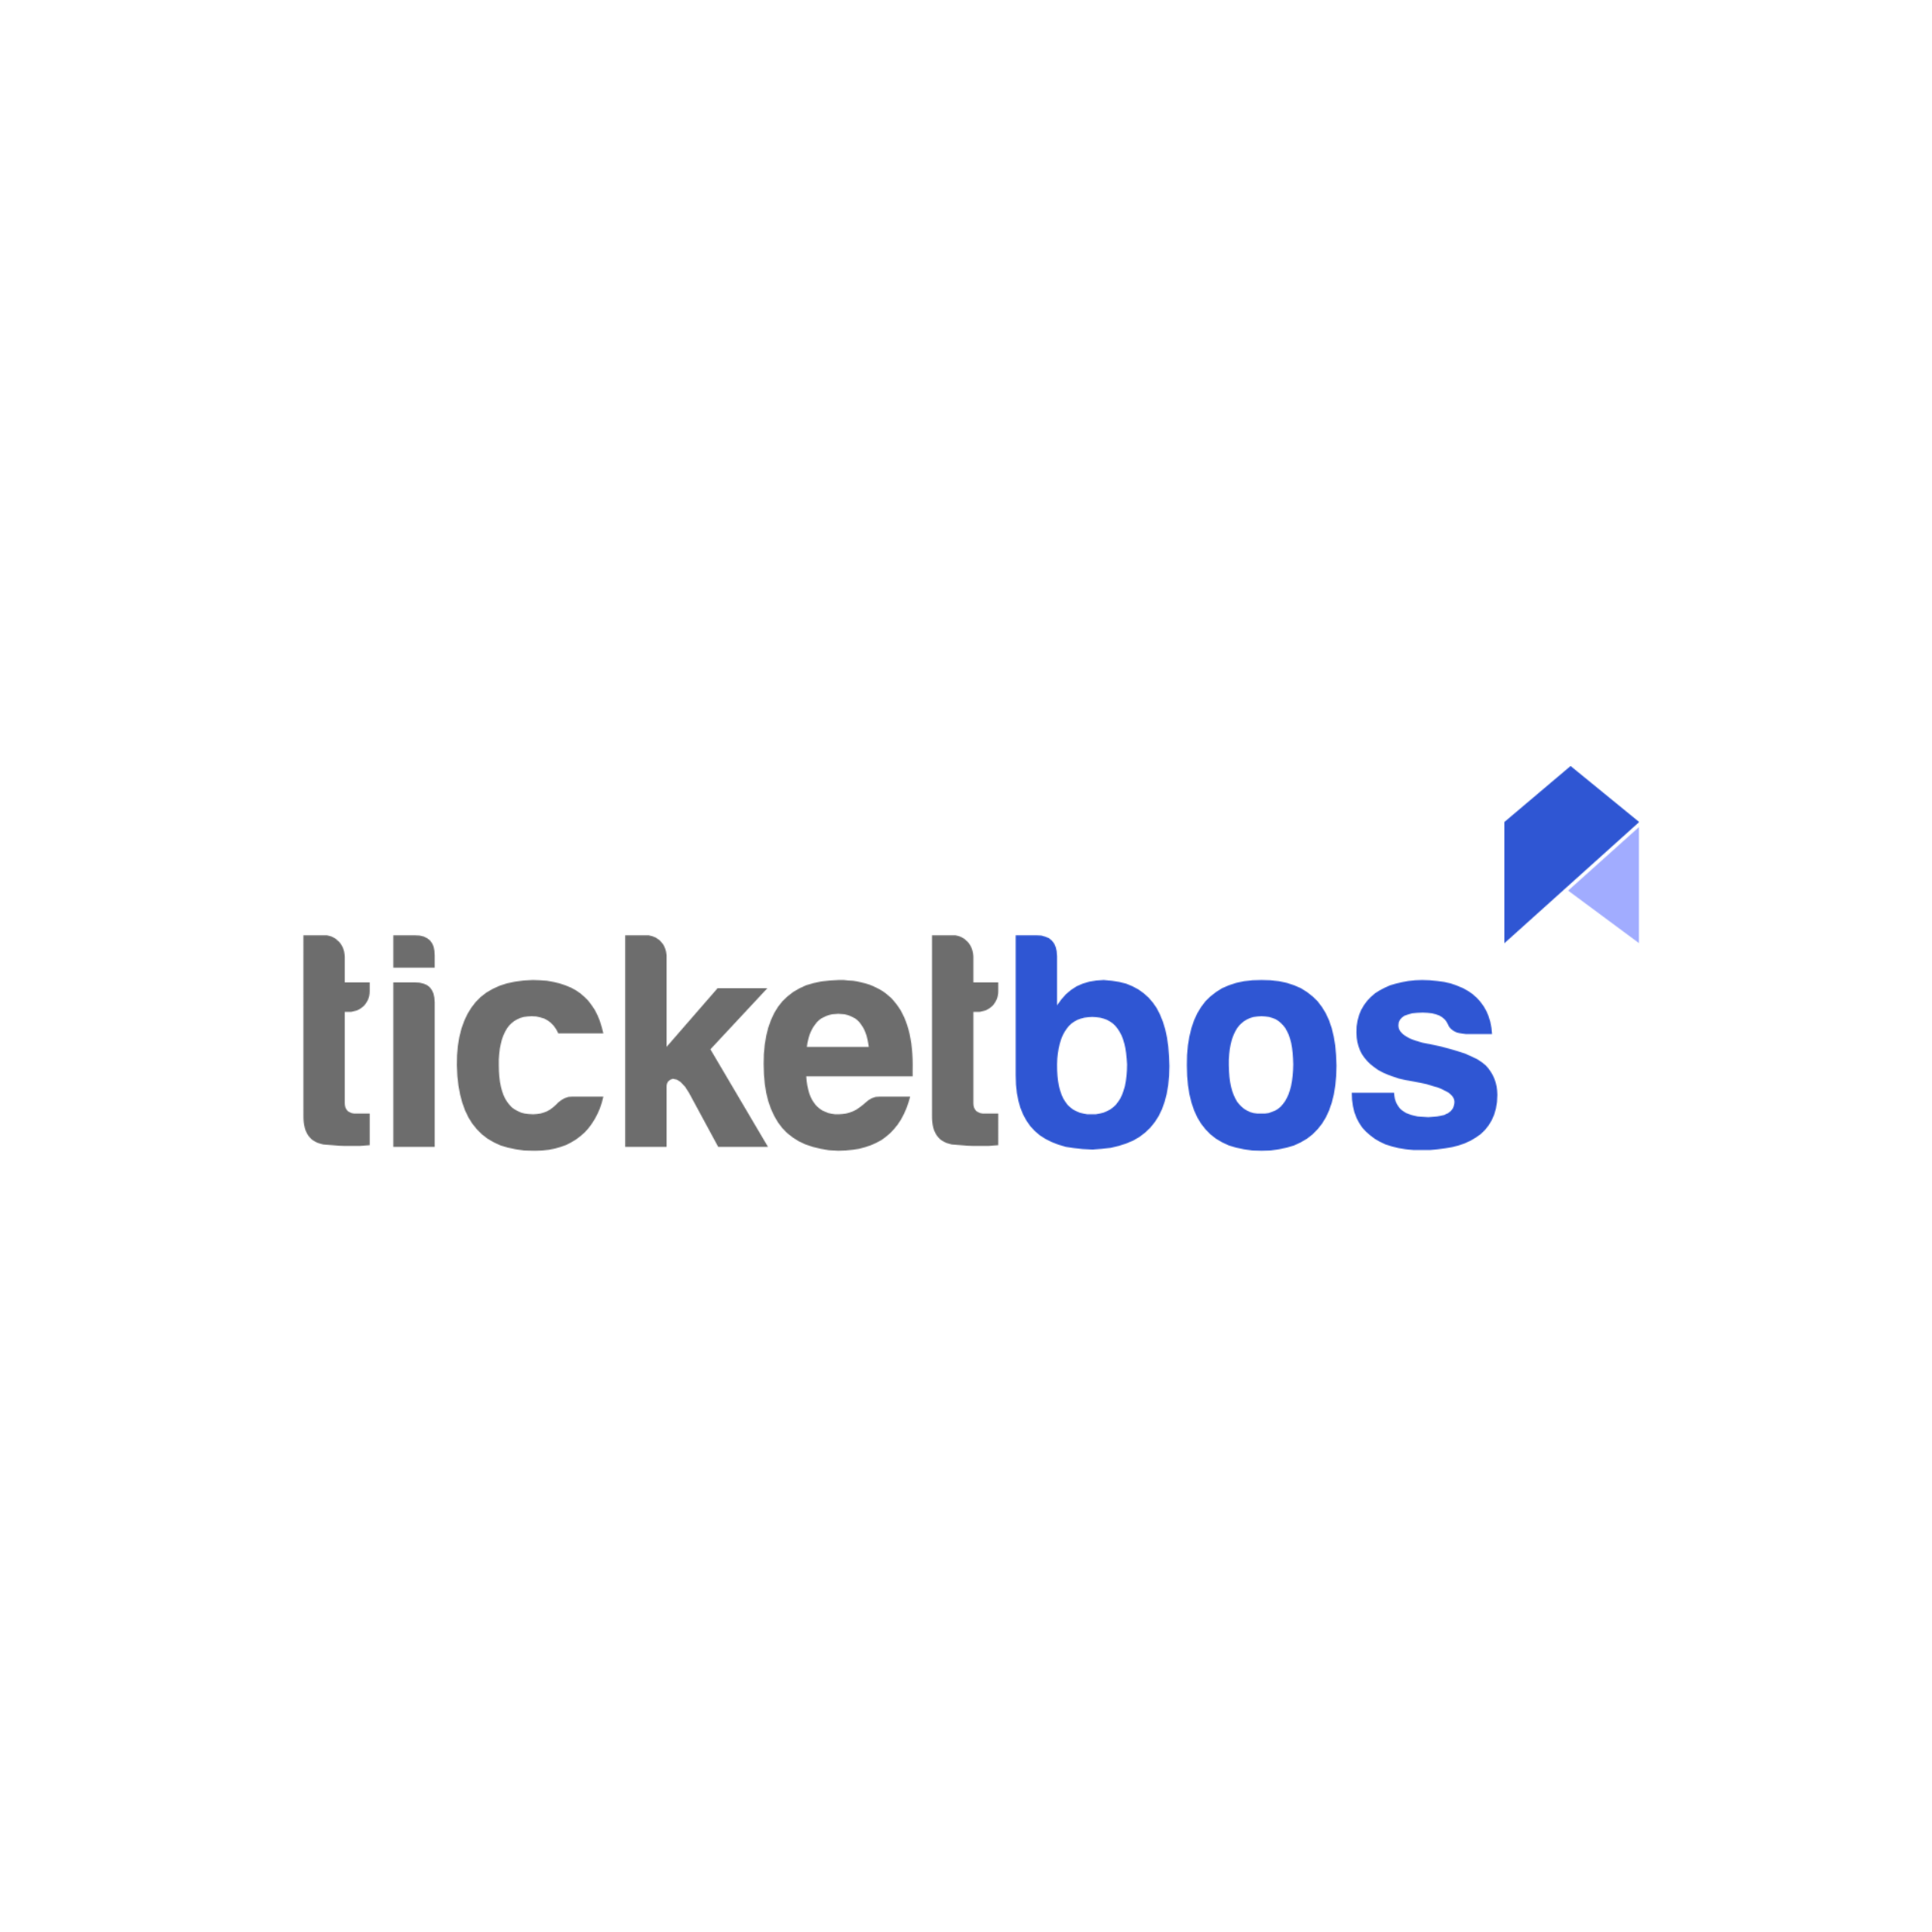 11-ticketbos_logo